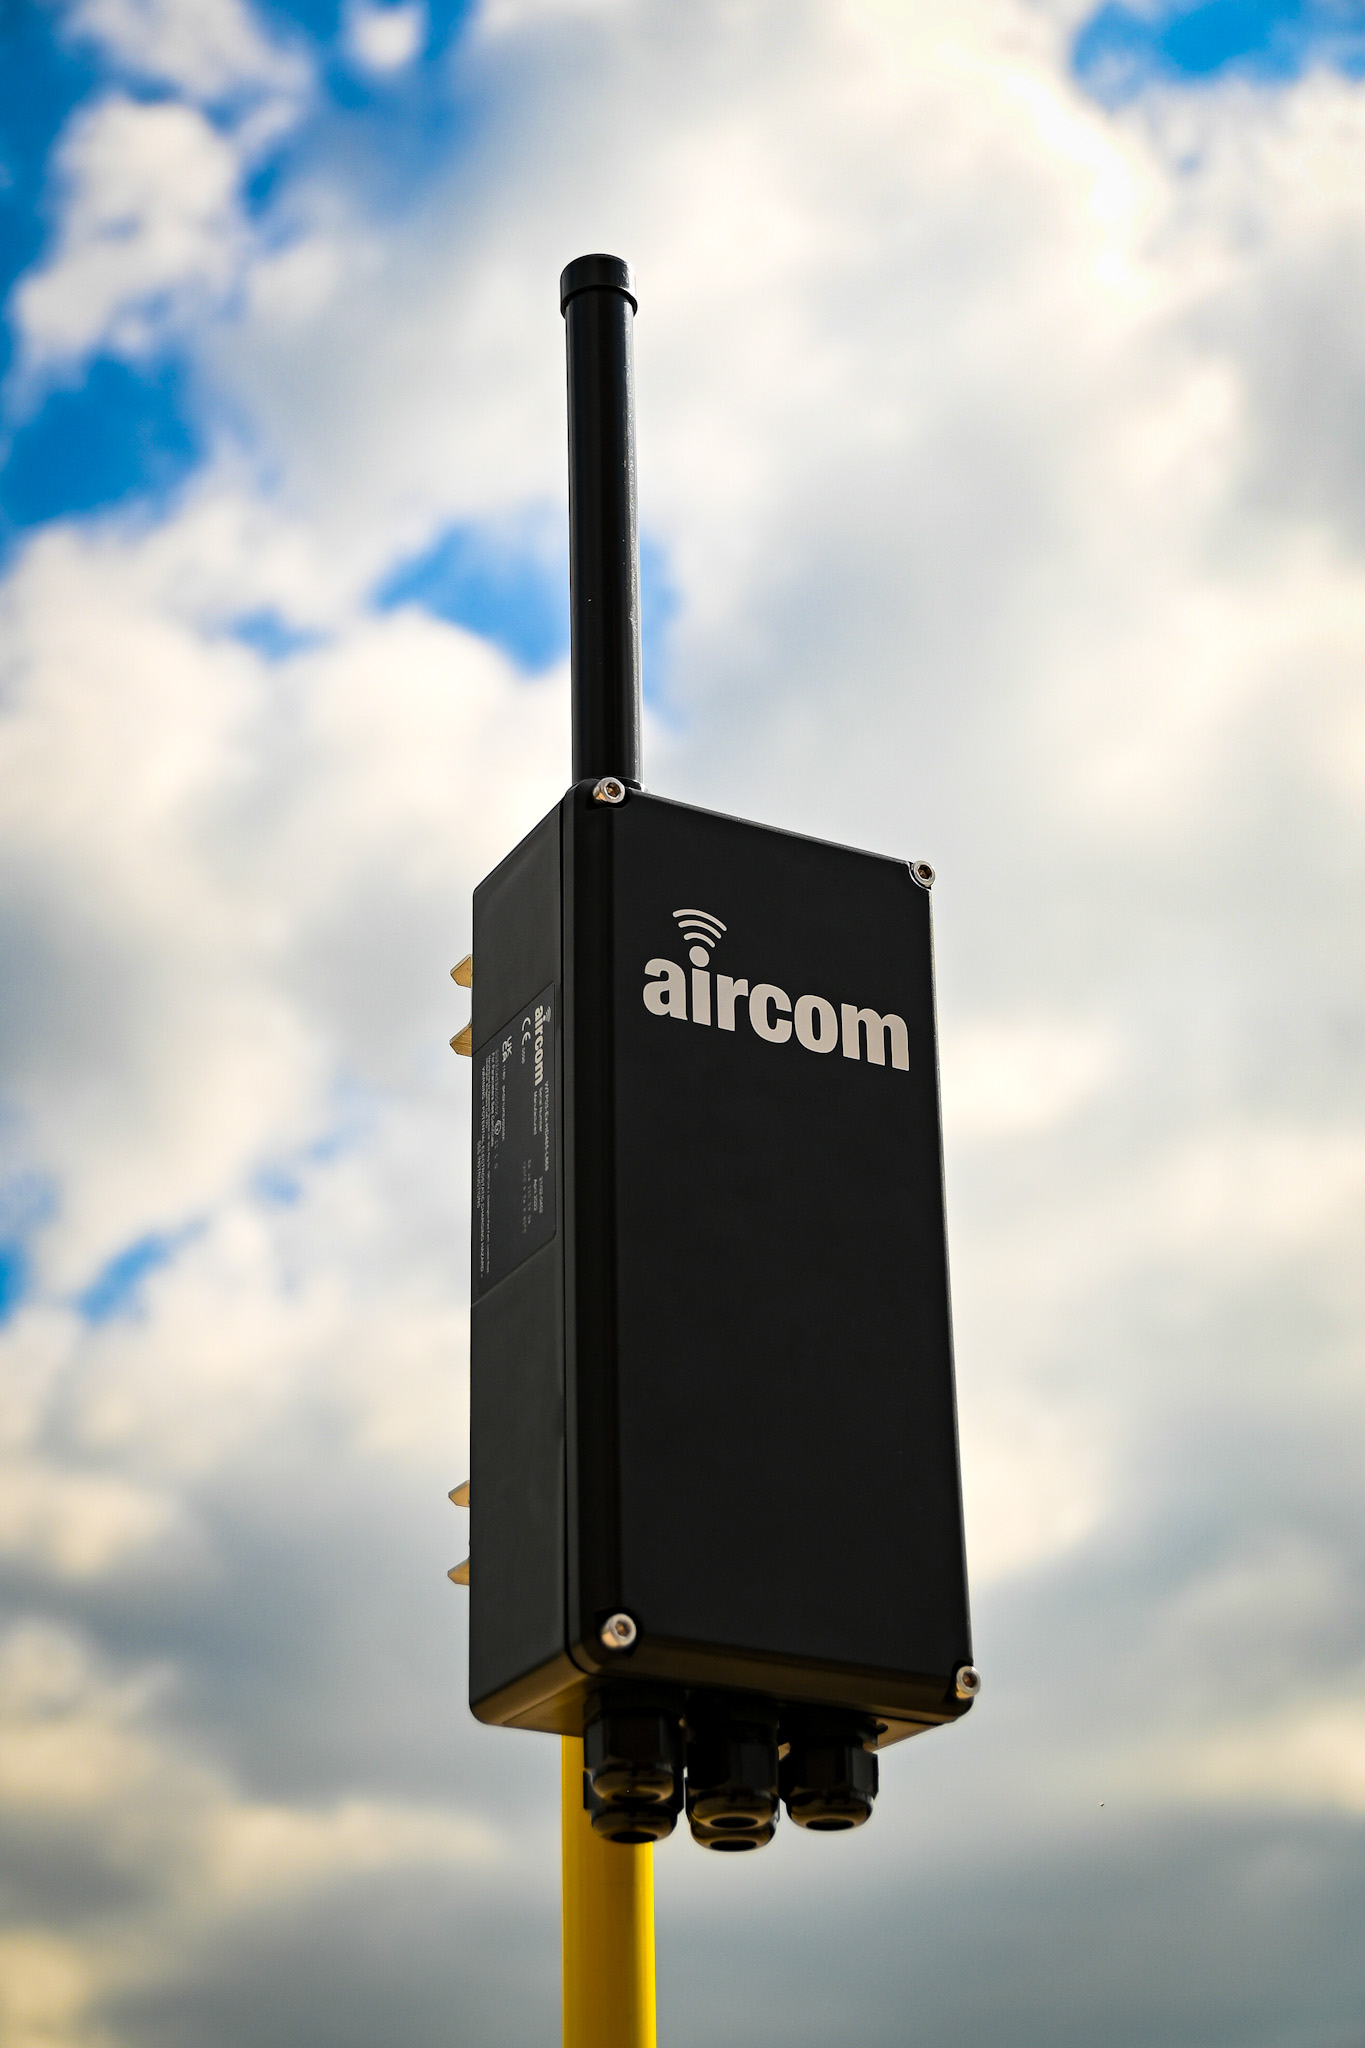 Aircom blue cloudy sky